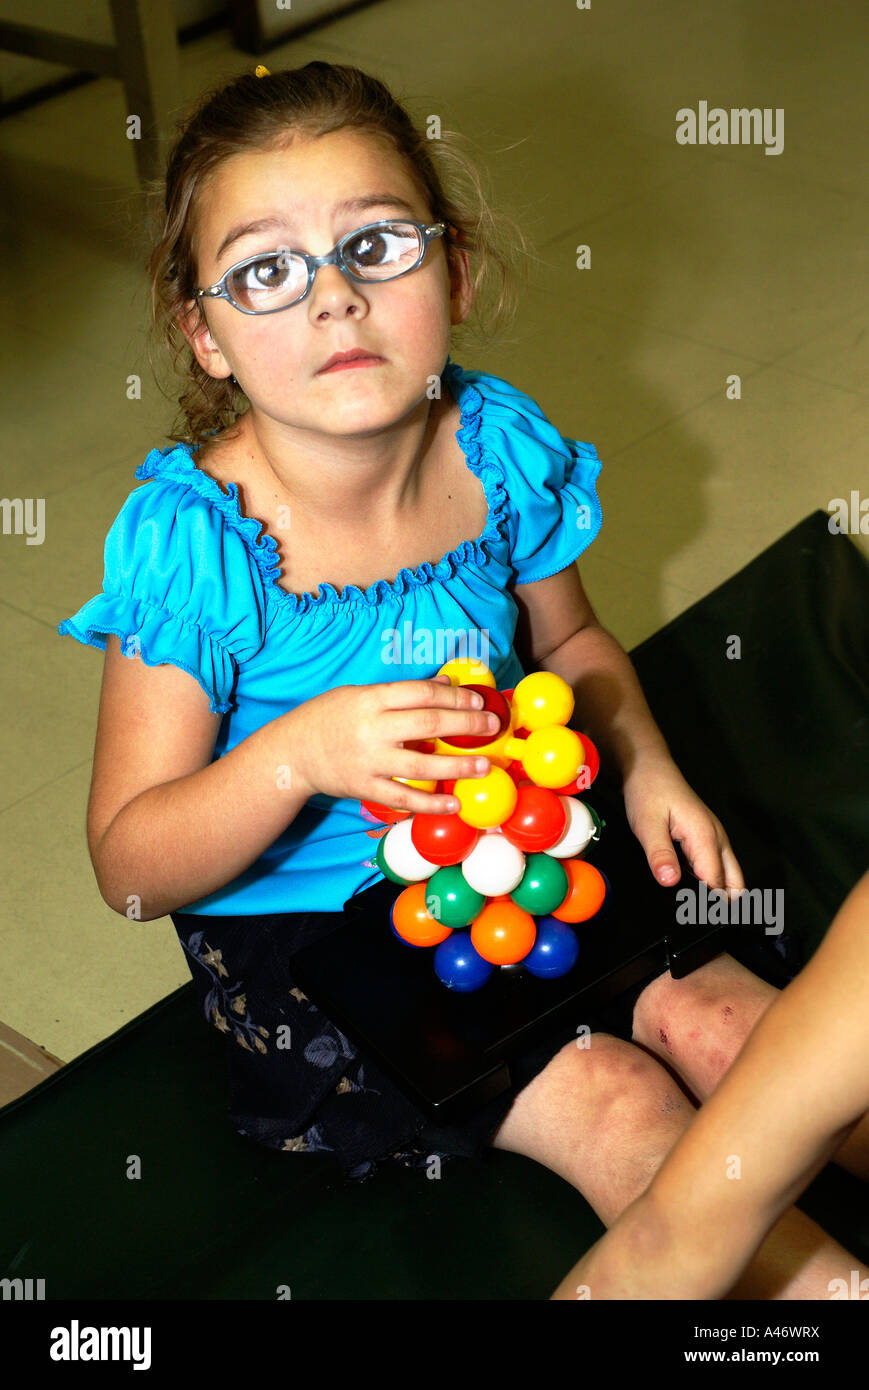 Low Vision: Mädchen mit sehr starken Brillen, Sao Paulo, Brasilien  Stockfotografie - Alamy